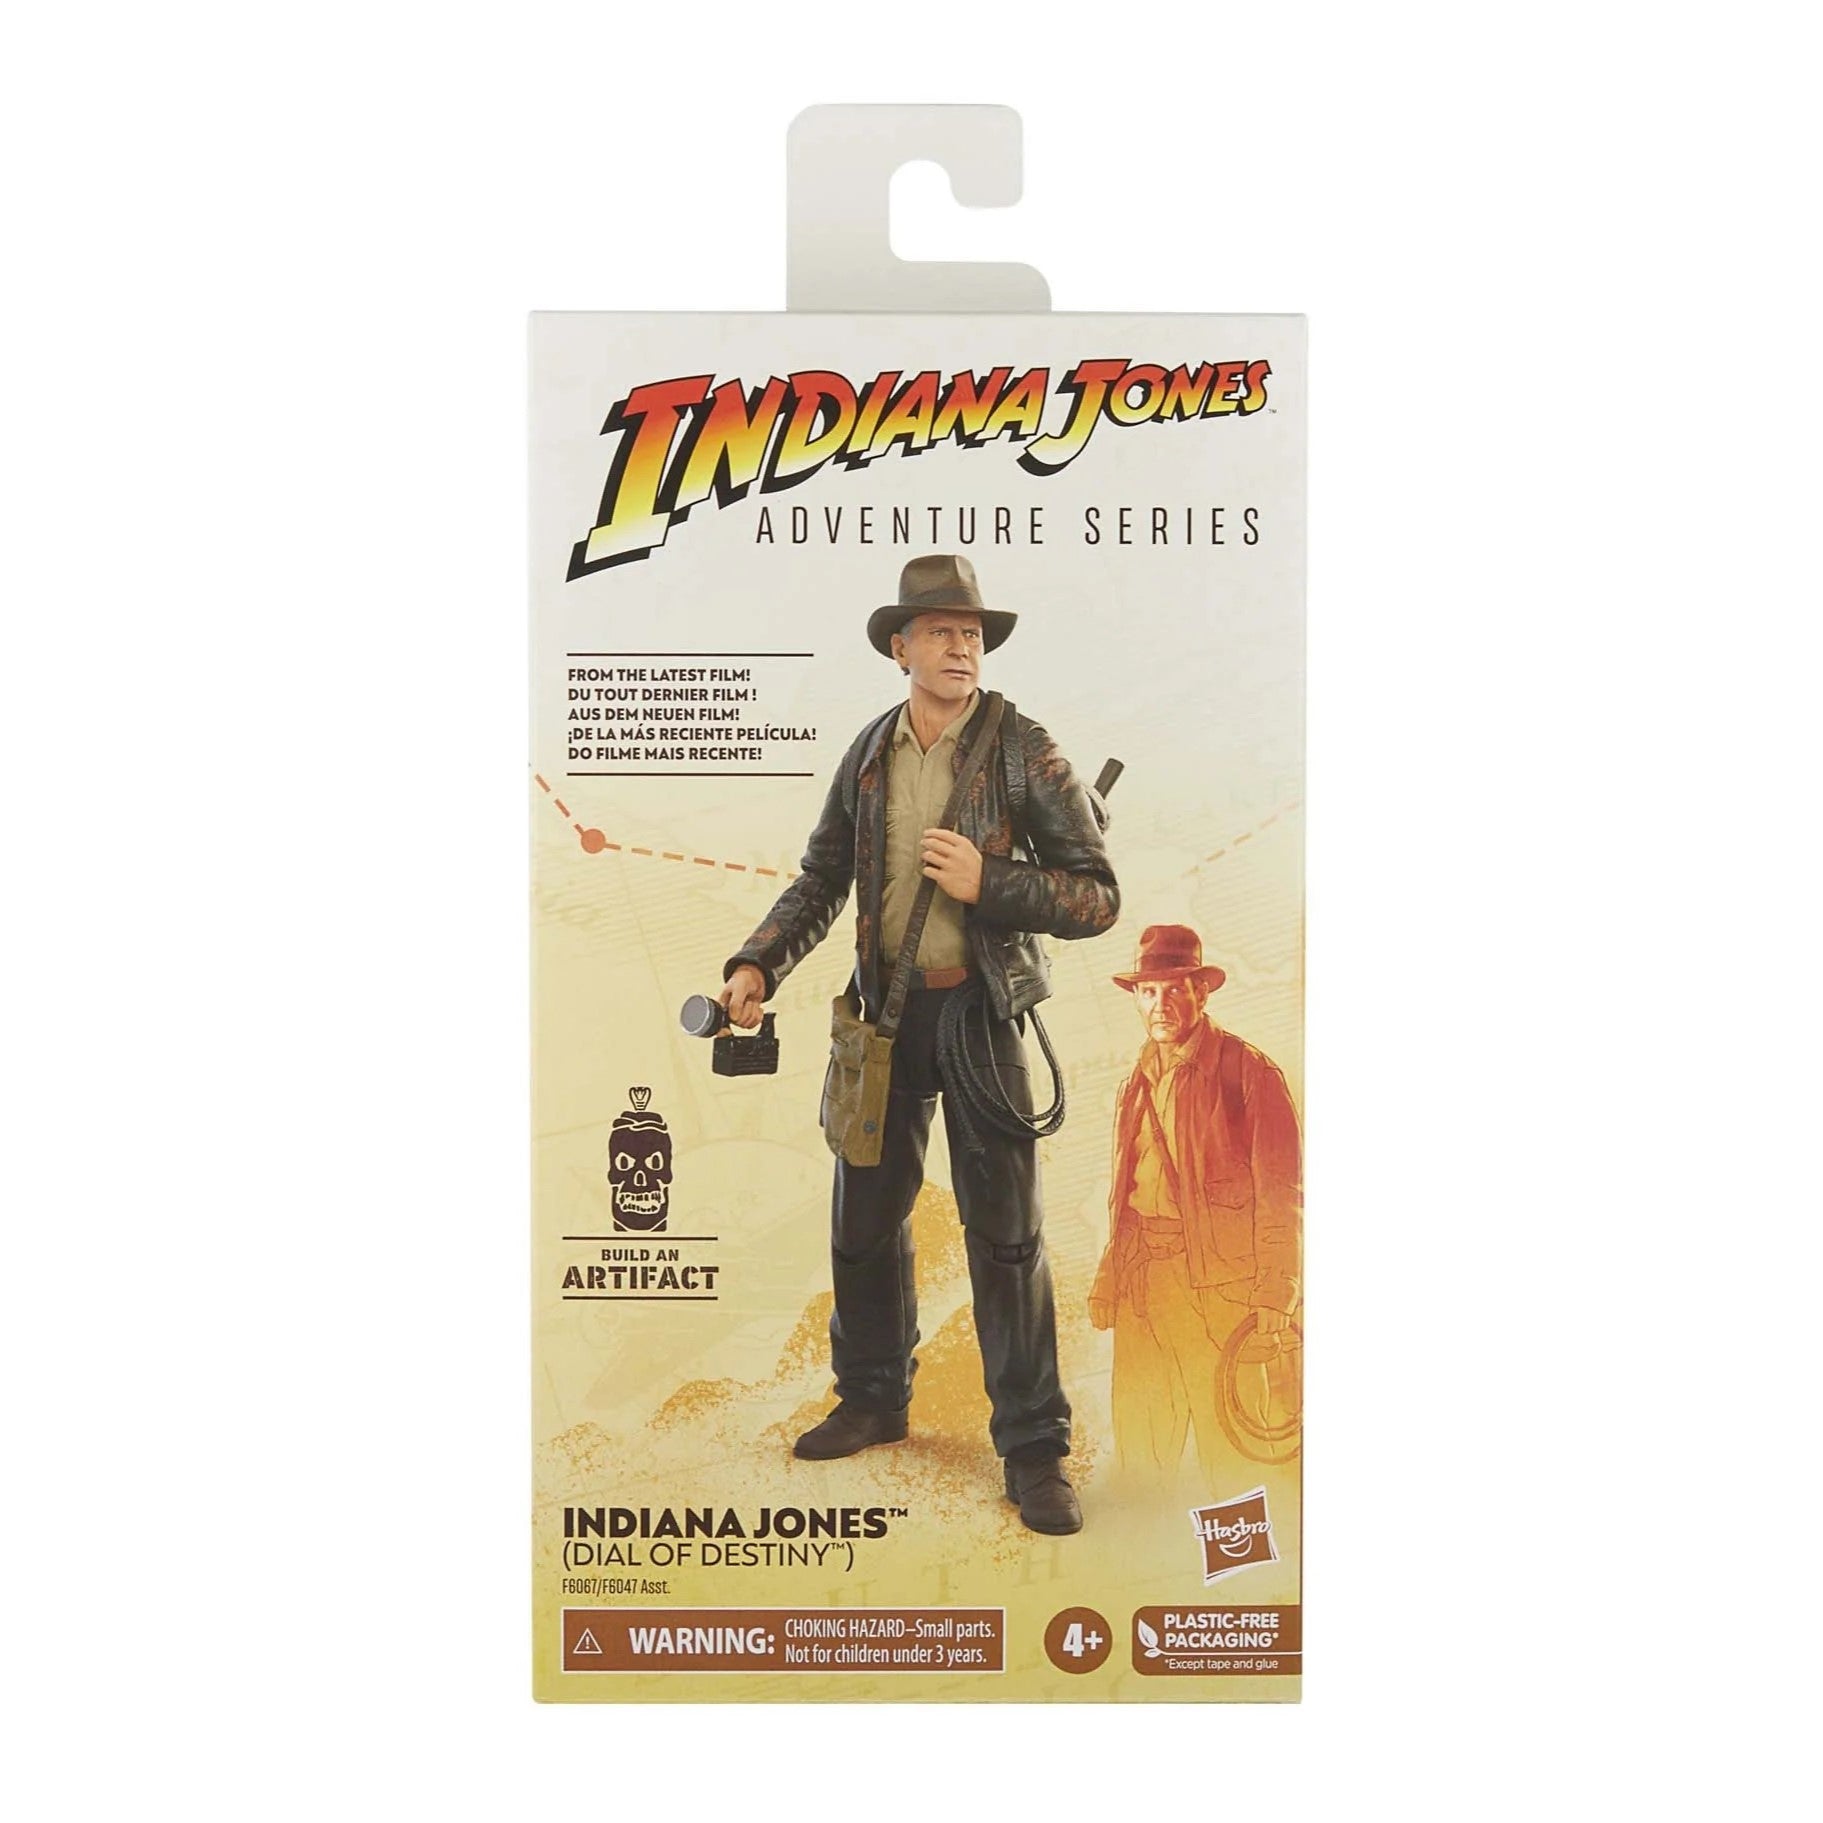 Indiana Jones Adventure Series Dial of Destiny Indiana Jones 6" Figure-1